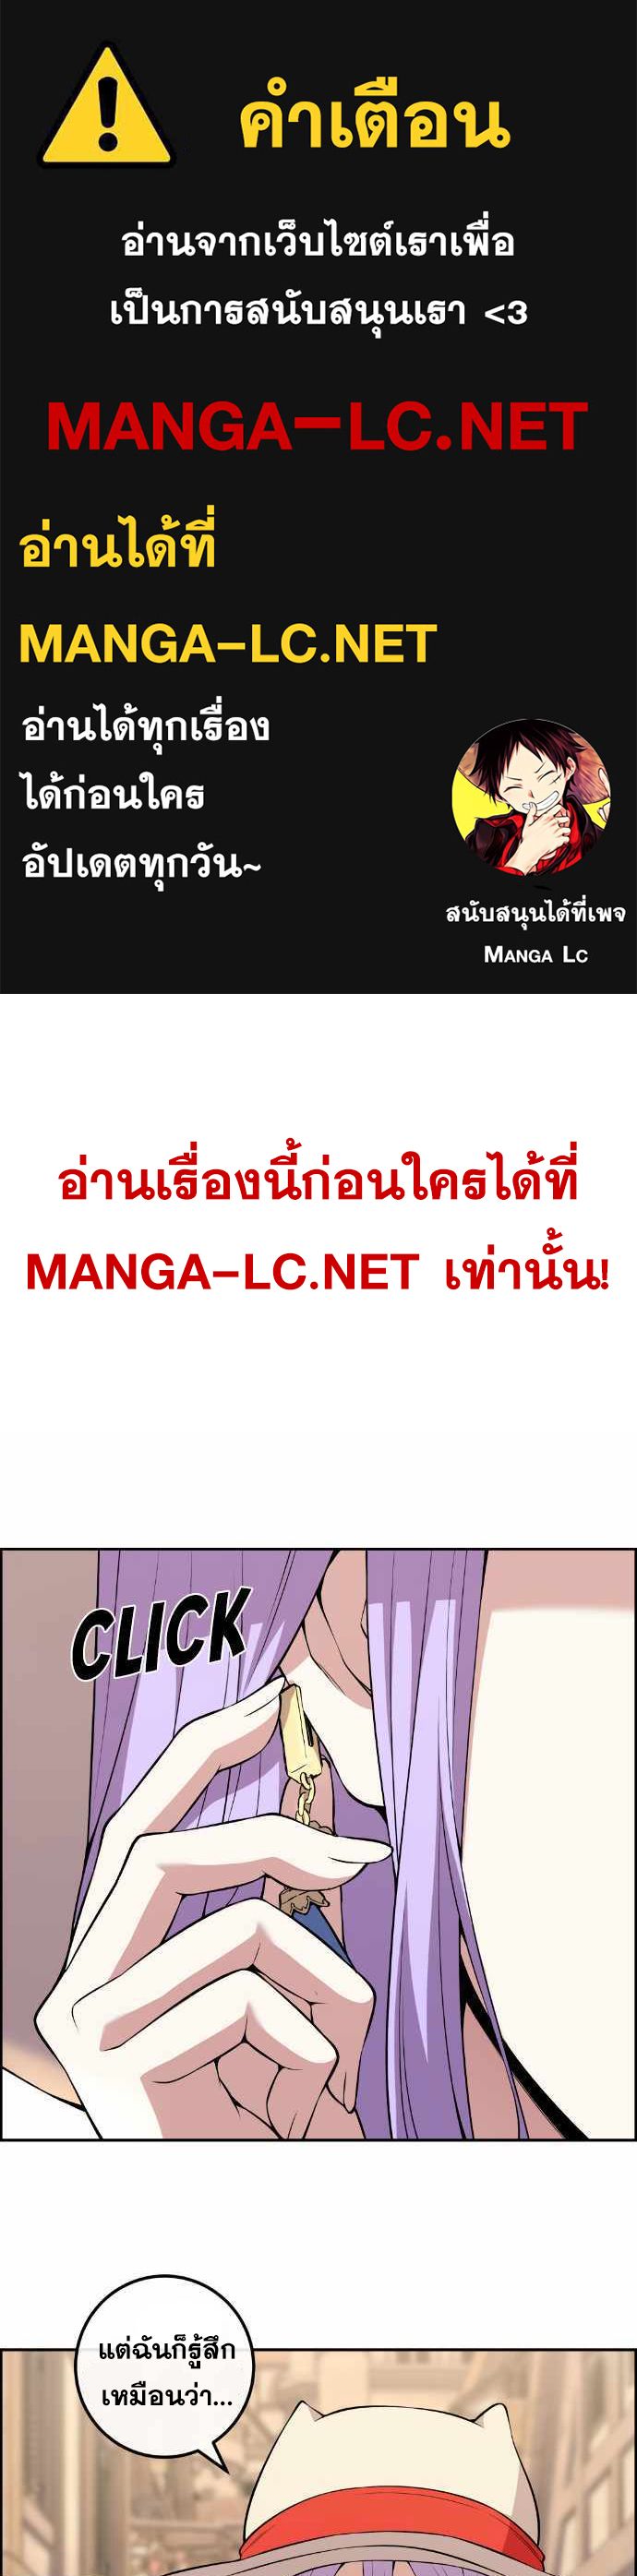 Webtoon Character Na Kang Lim ตอนที่ 123 (1)